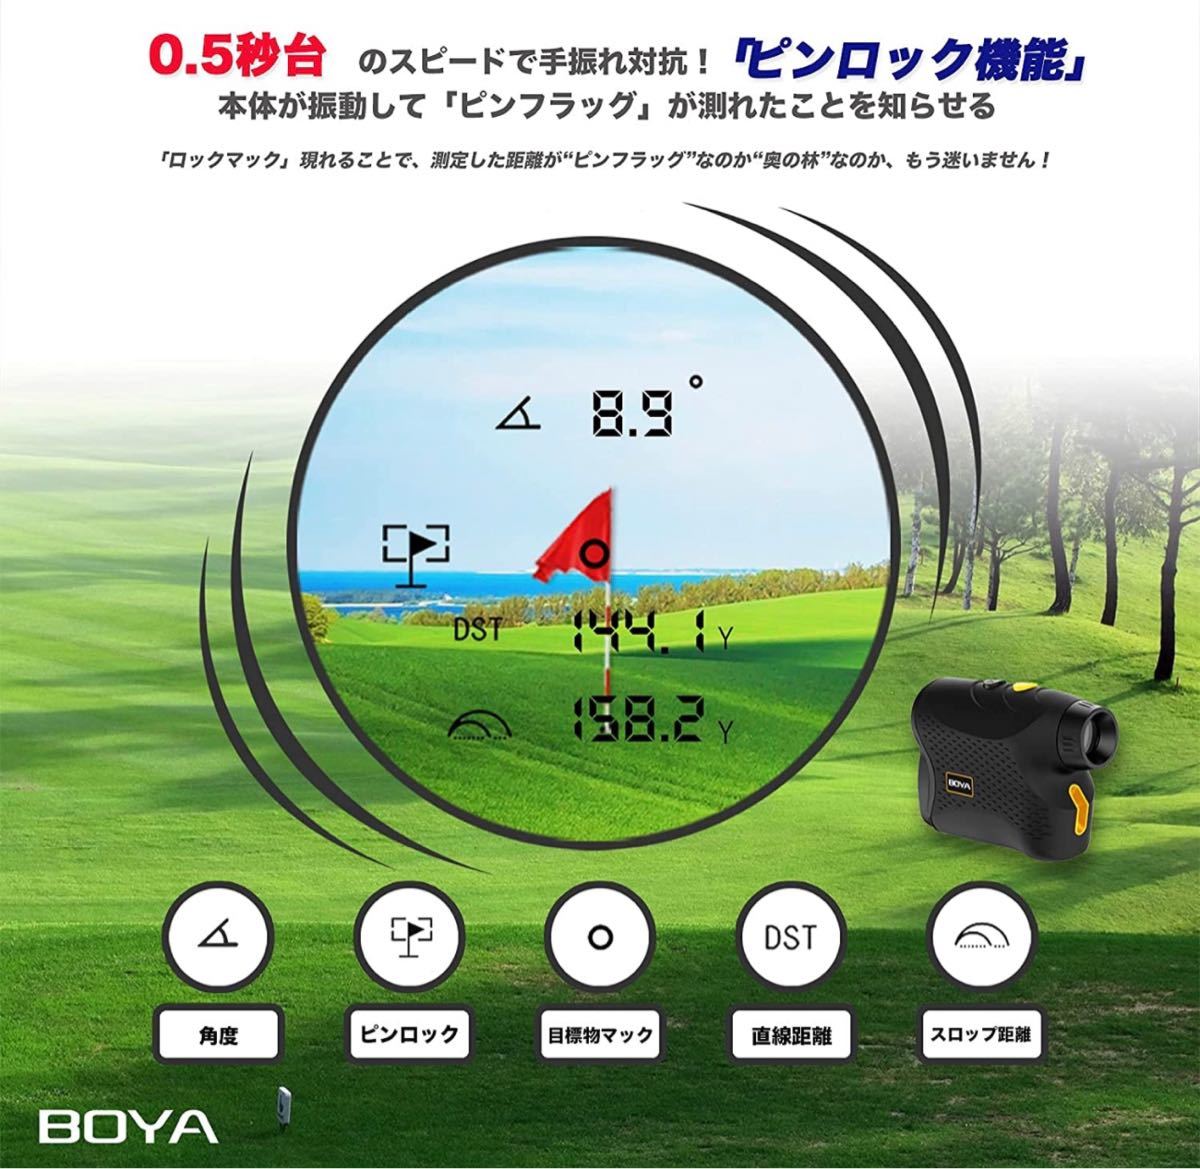 【新品】BOYA ゴルフ用レーザー距離計 1100yd対応 スロープ距離 振動機能 レンジファインダー 距離測定器 LR1000P_画像3